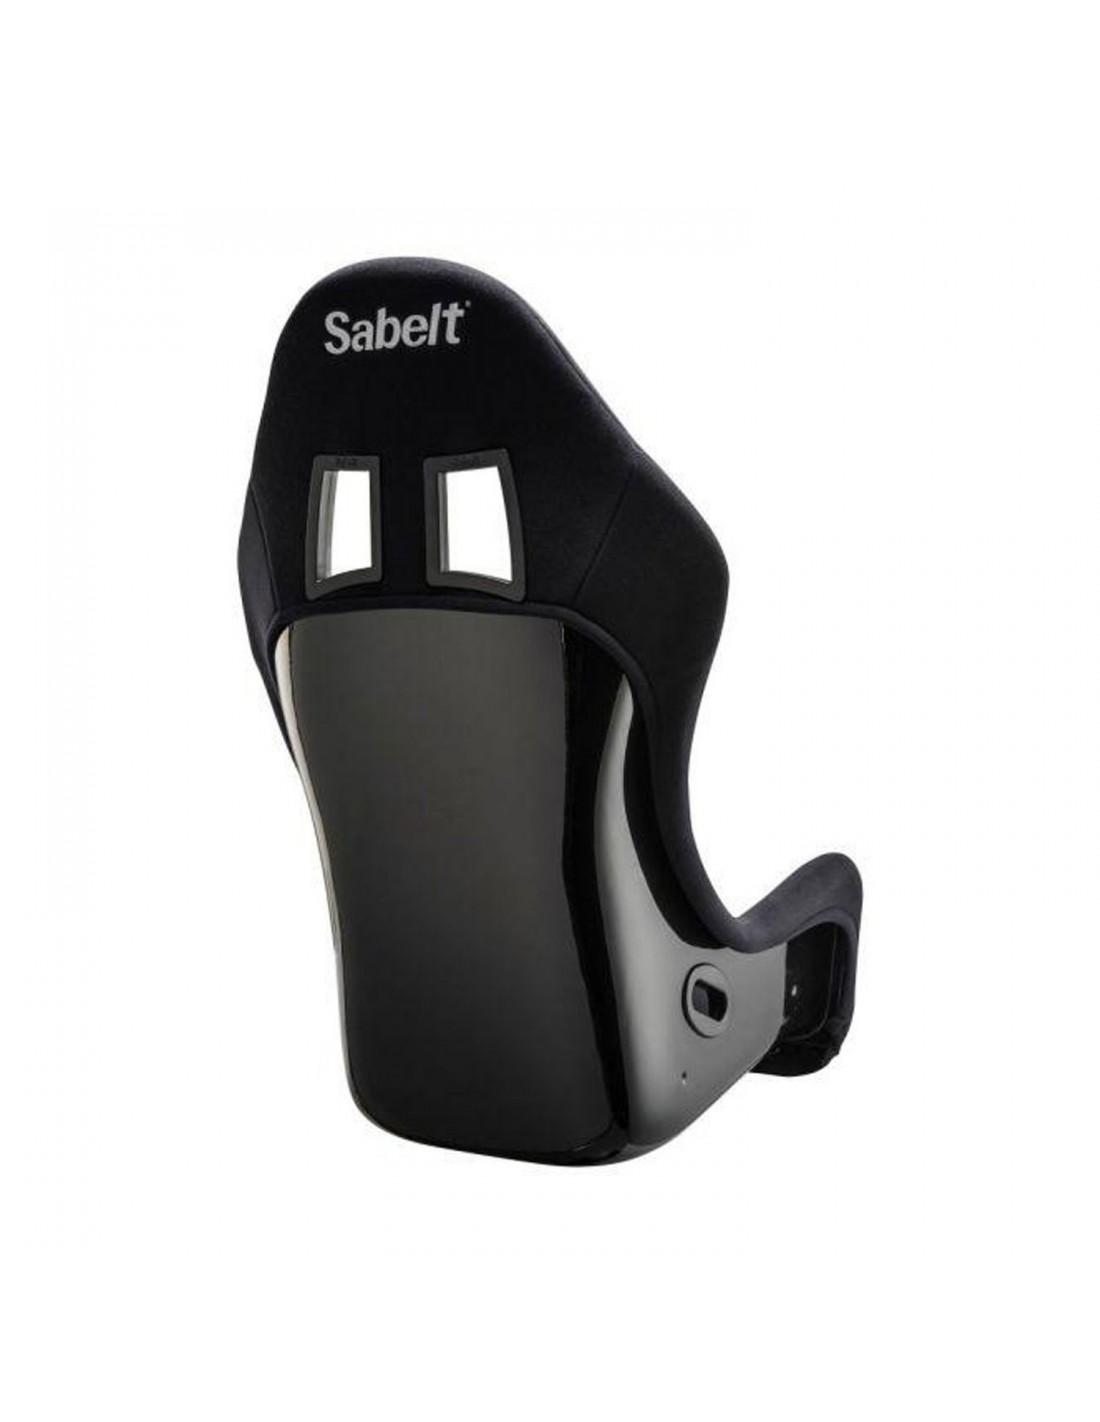 TITAN MAX Sport Seat - Sabelt